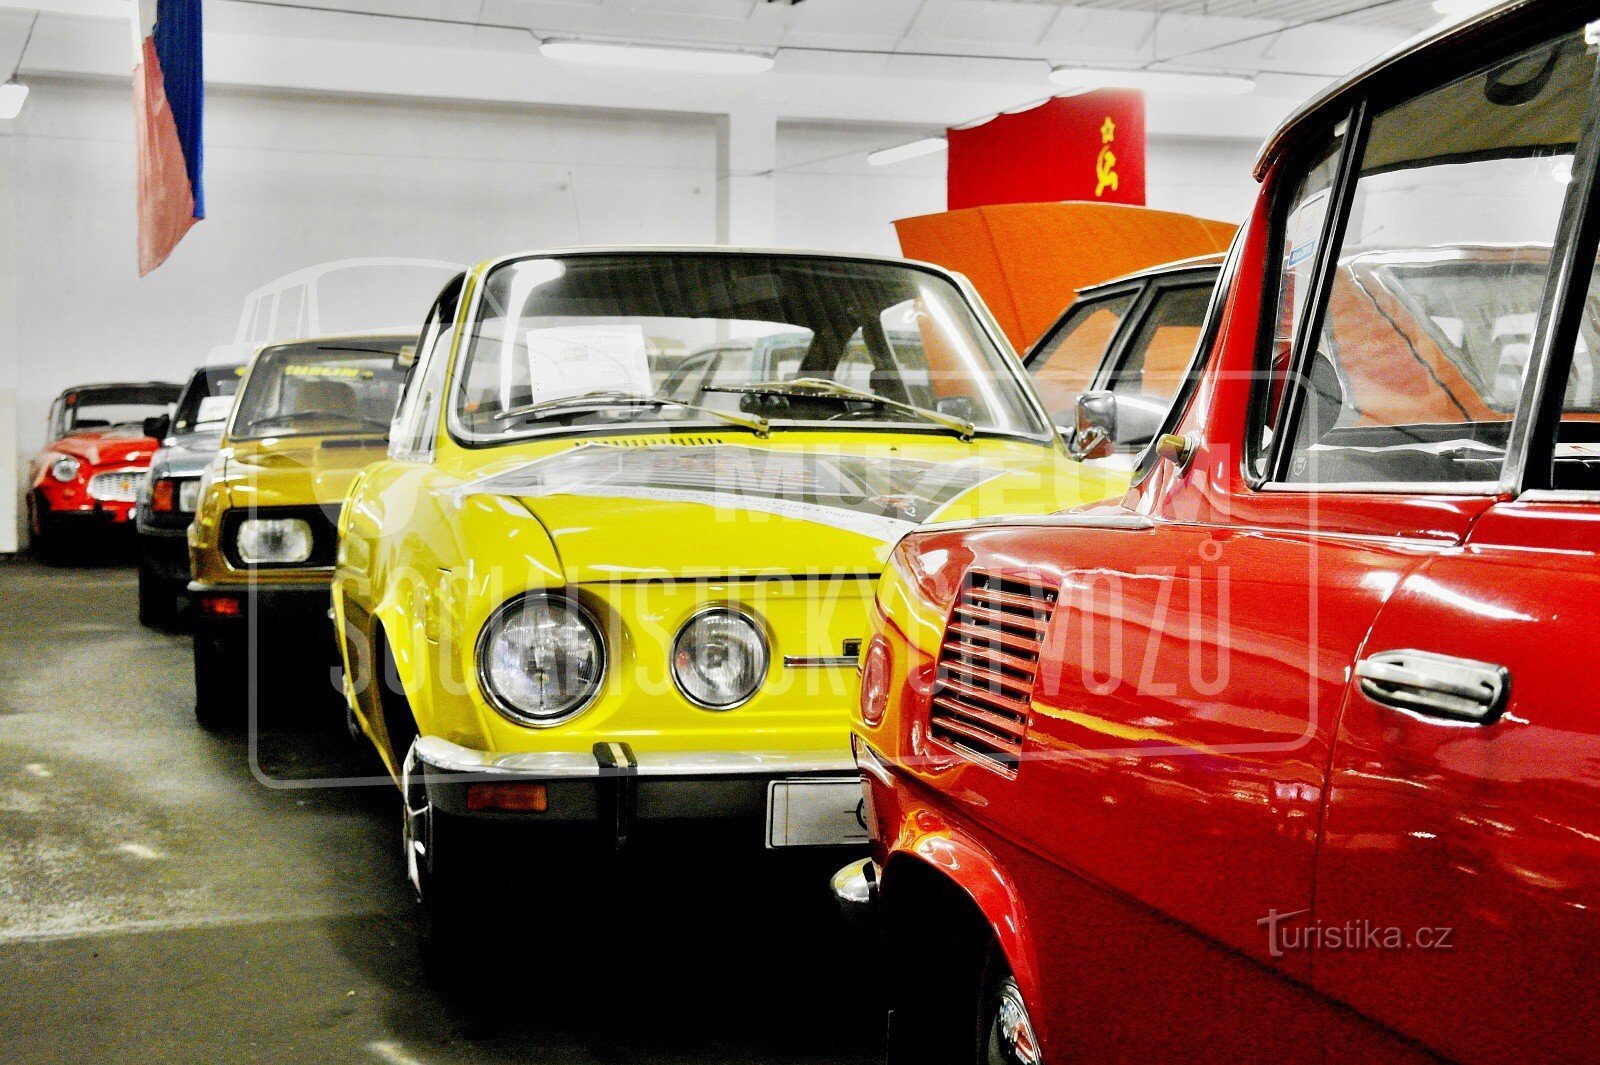 Μουσείο σοσιαλιστικών αυτοκινήτων - Velké Hamry